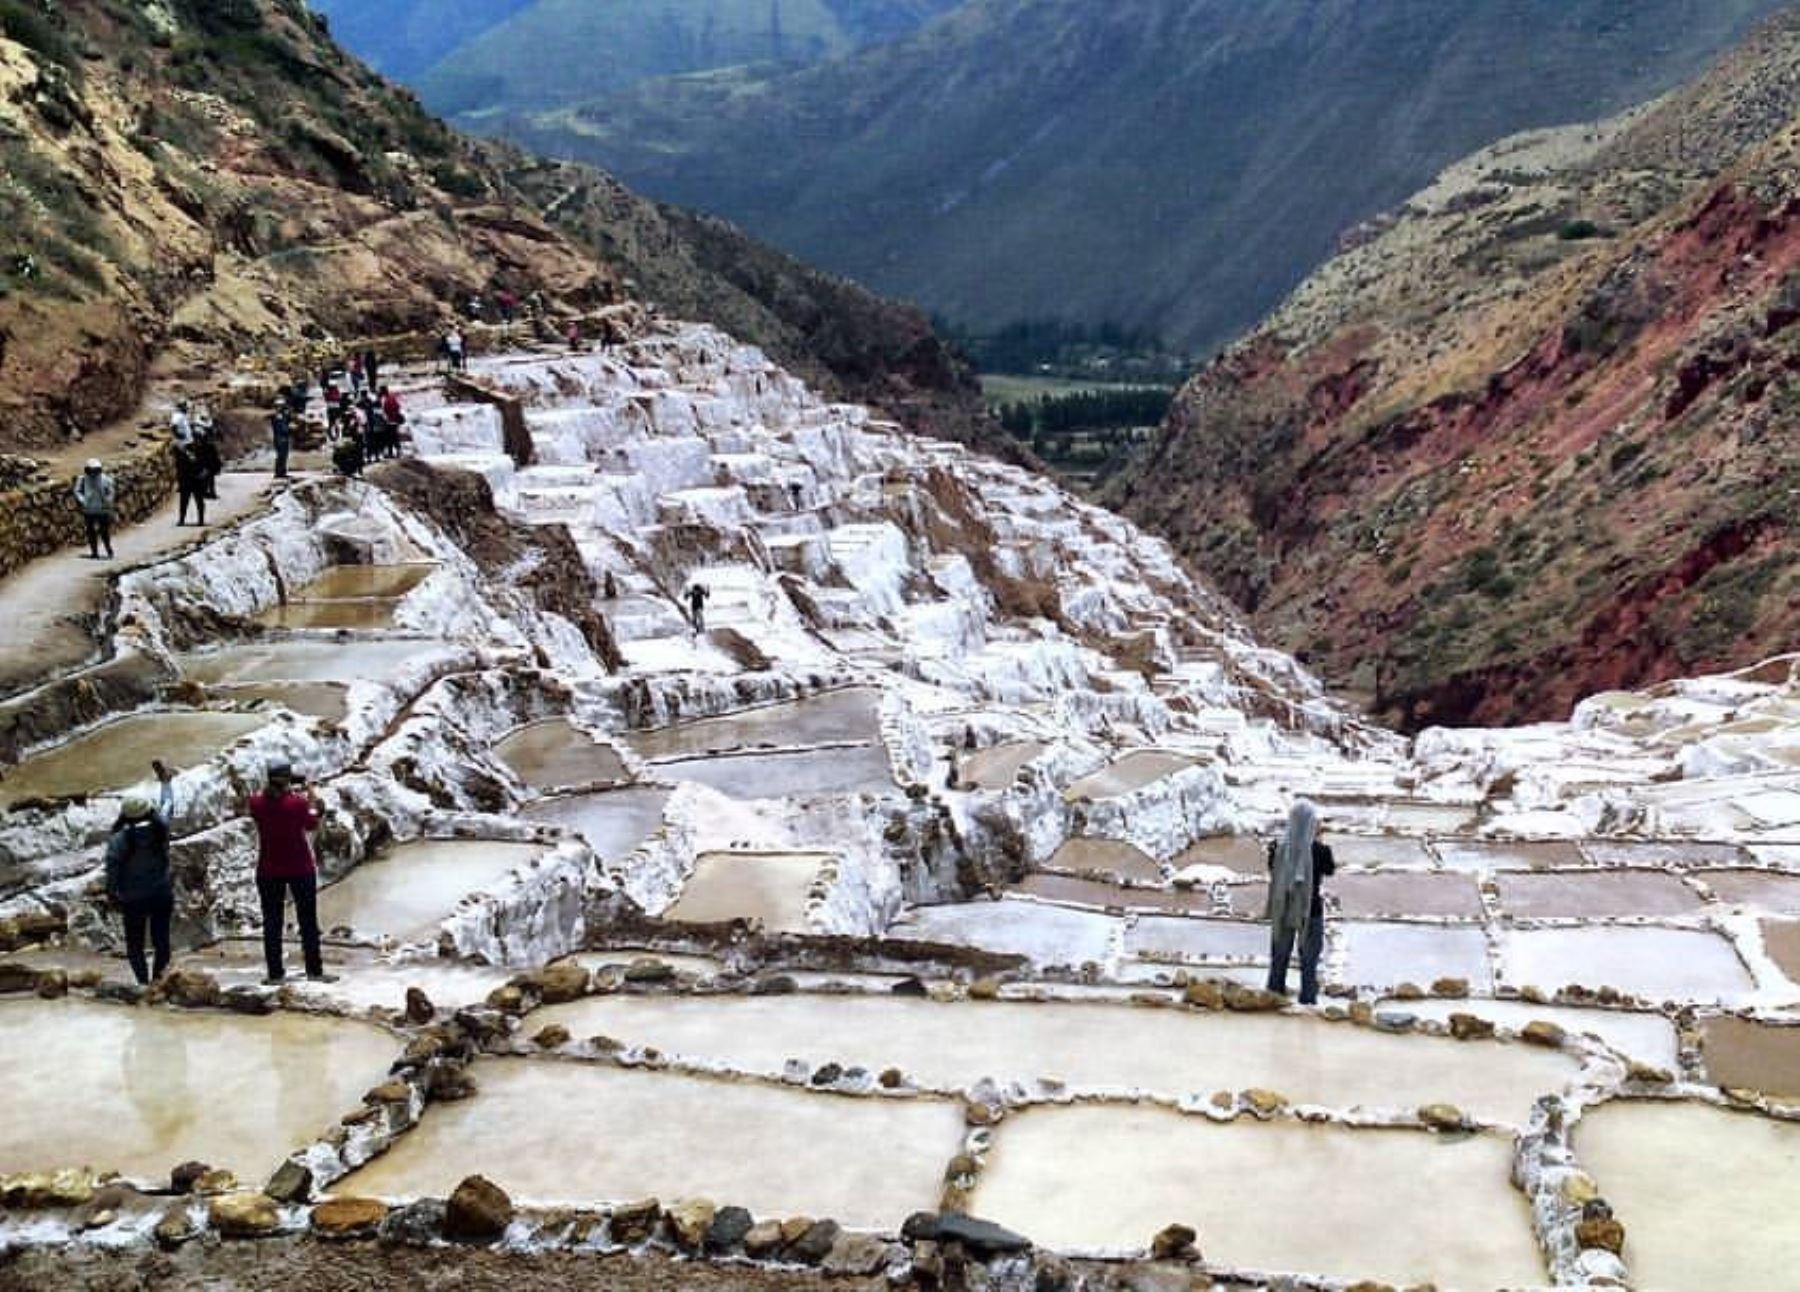 Turistas apreciarÃ¡n impresionantes salineras de Maras, en Cusco desde un mirador. Foto: ANDINA/DifusiÃ³n.